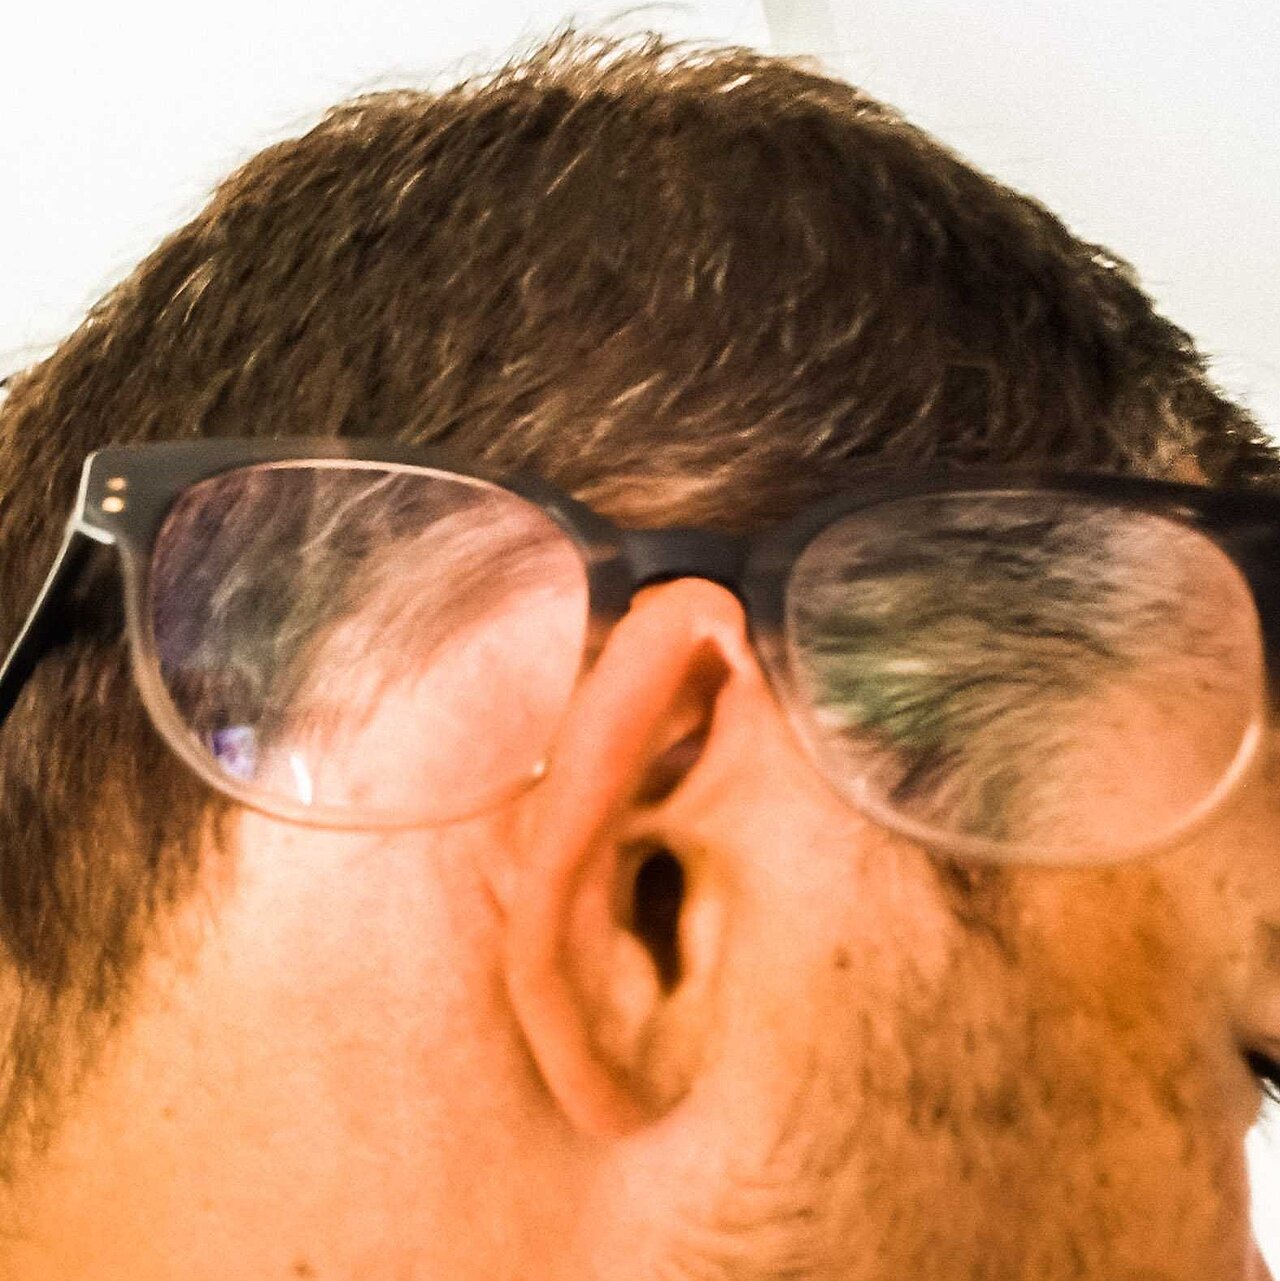 Profil eines Mannes und auf seinem Ohr sitzt eine Brille